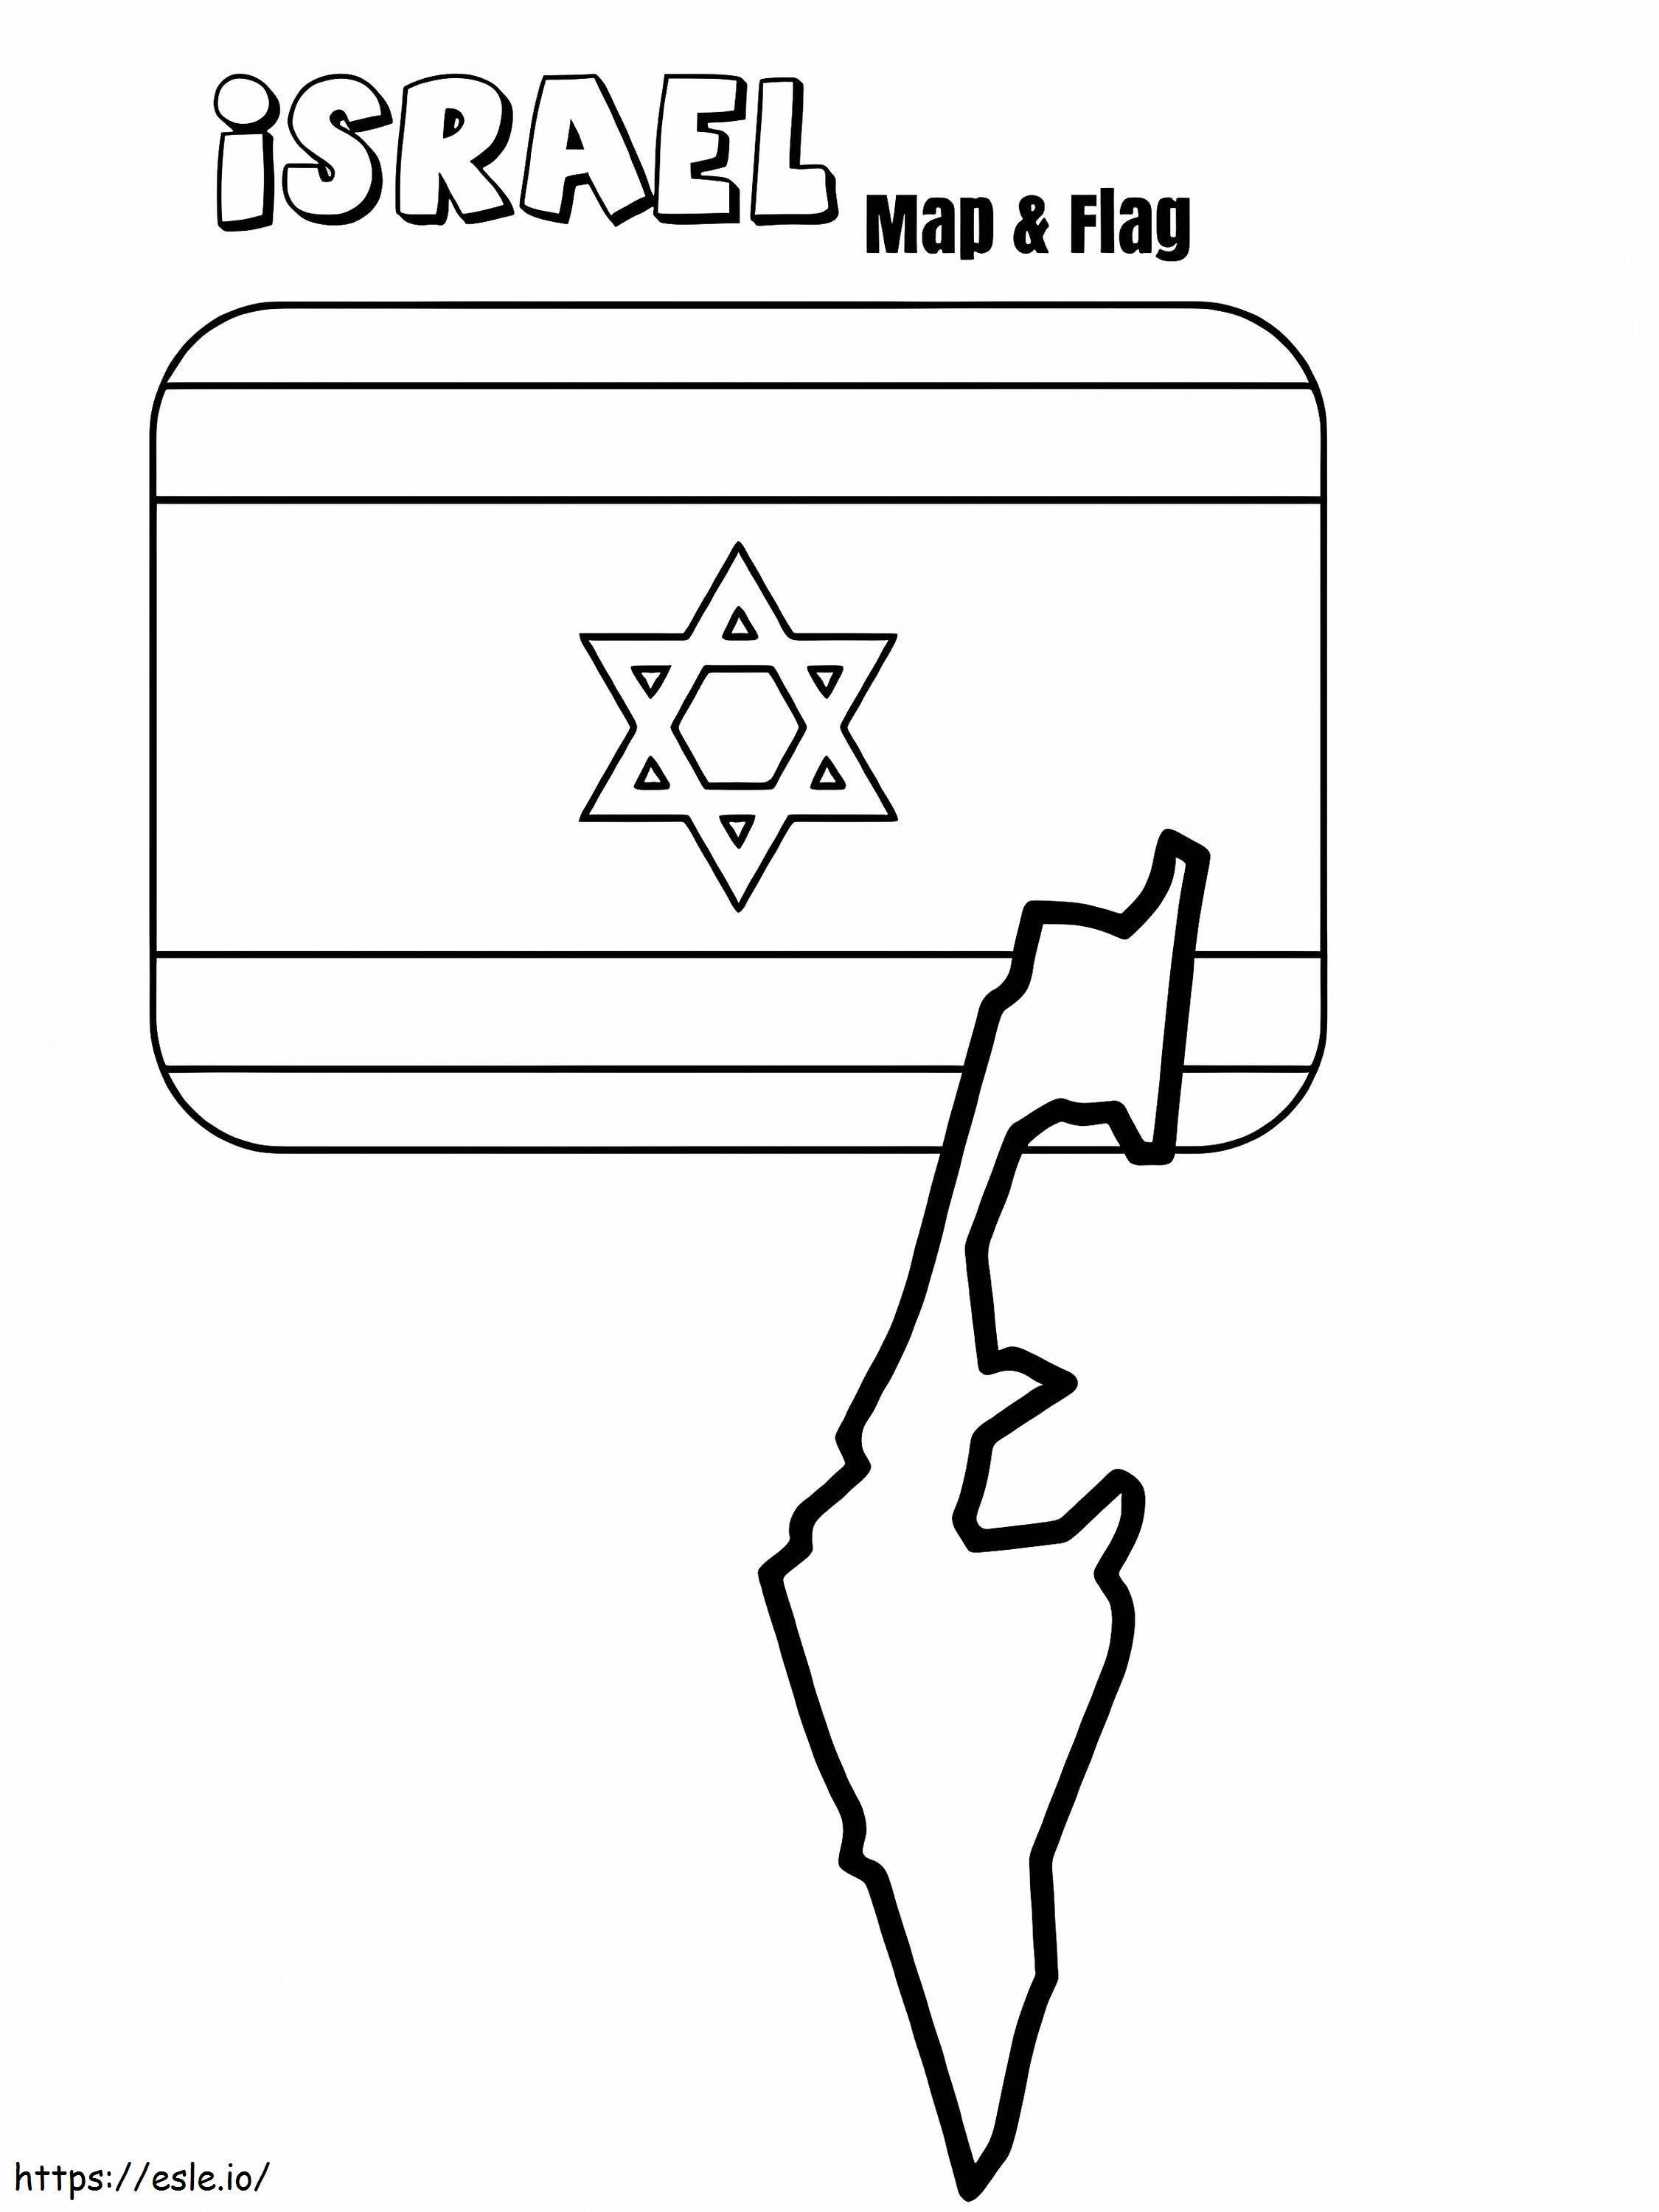 Mapa y bandera de Israel para colorear